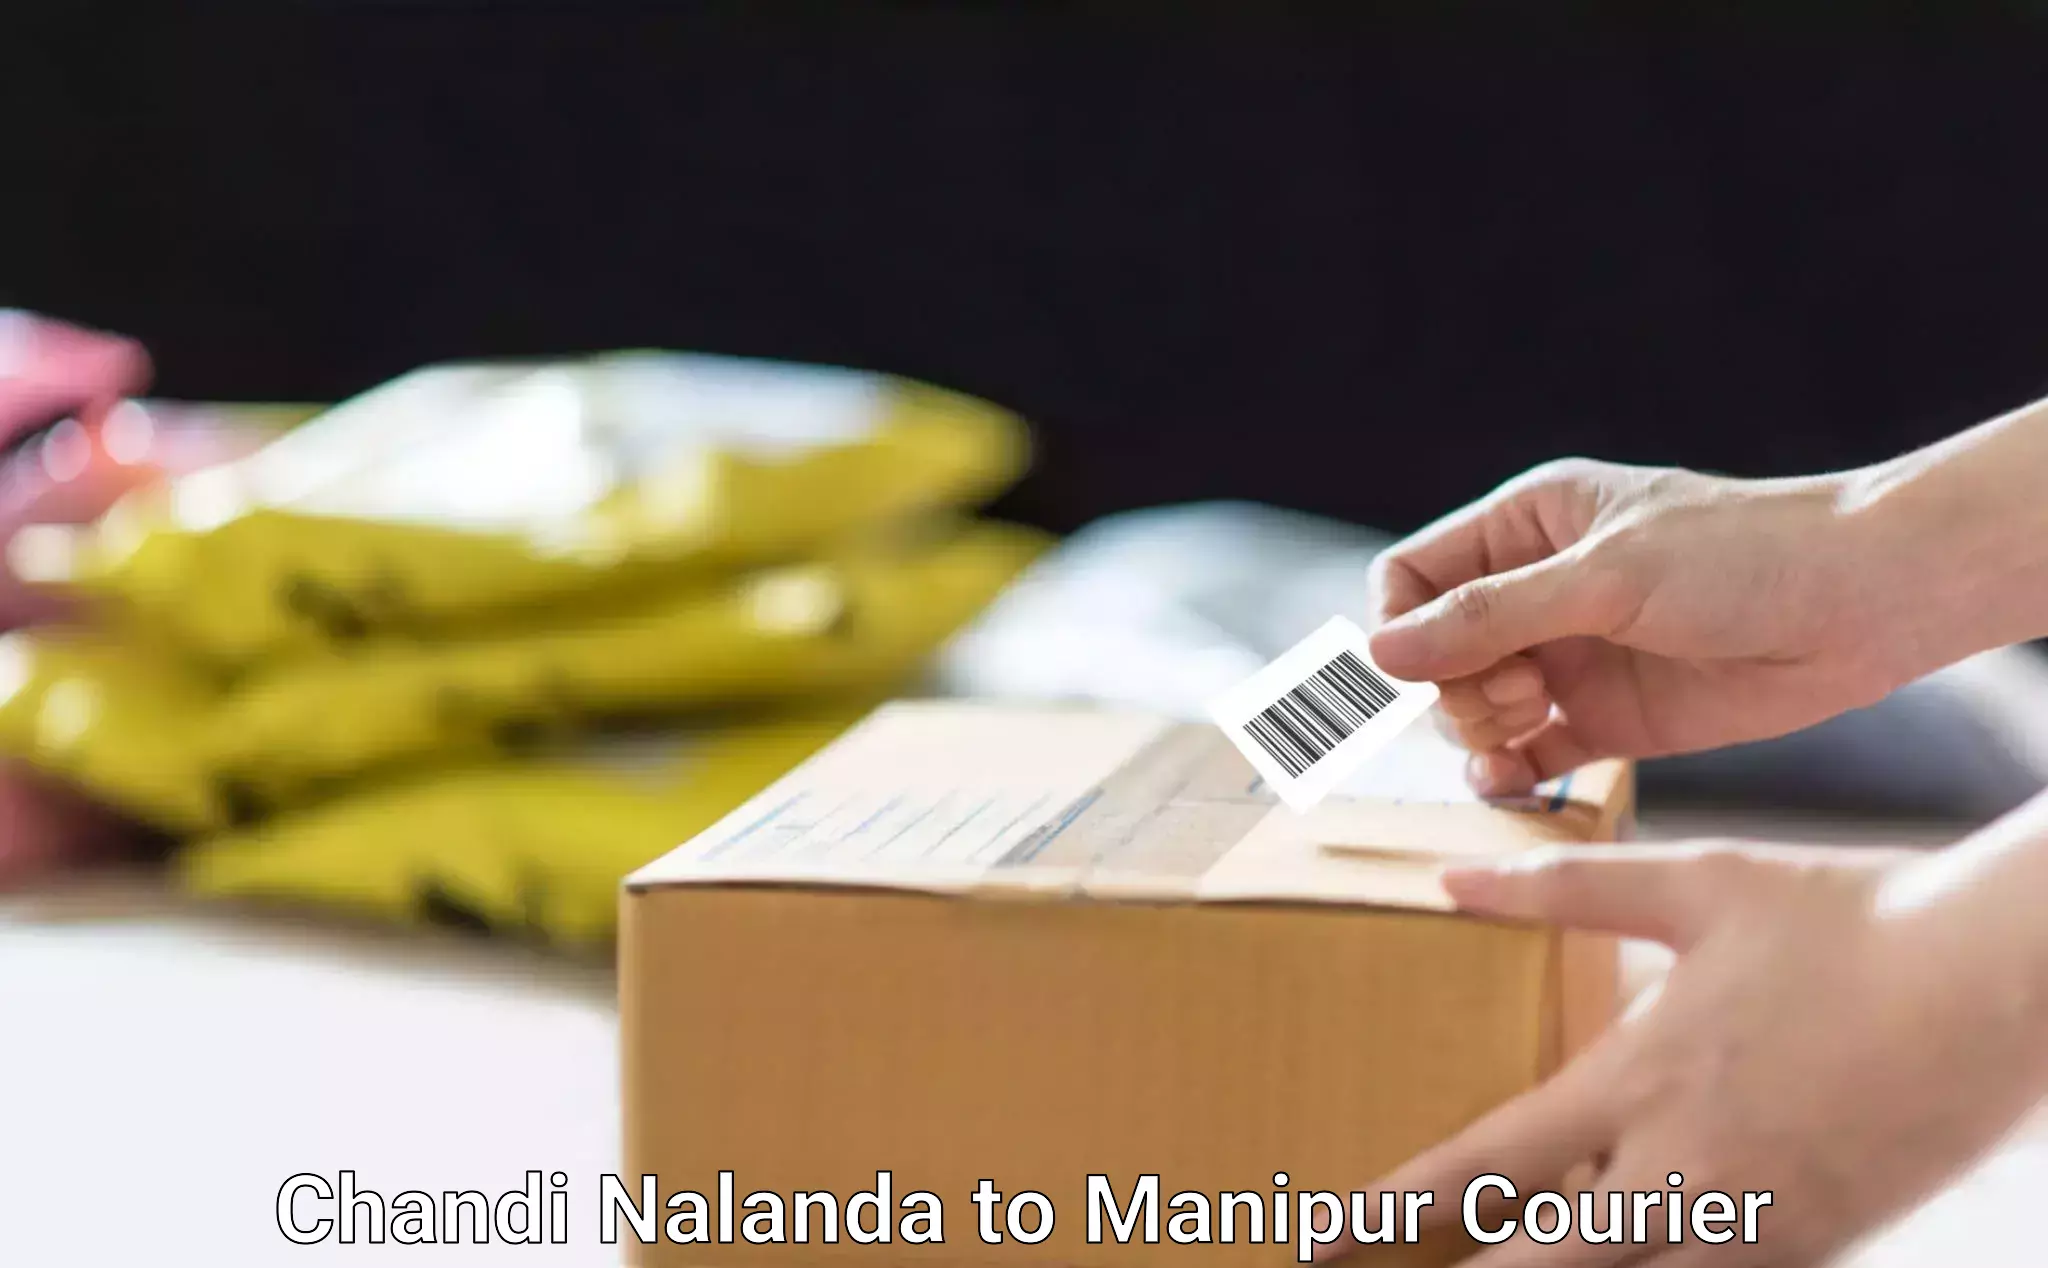 Nationwide furniture transport Chandi Nalanda to Senapati